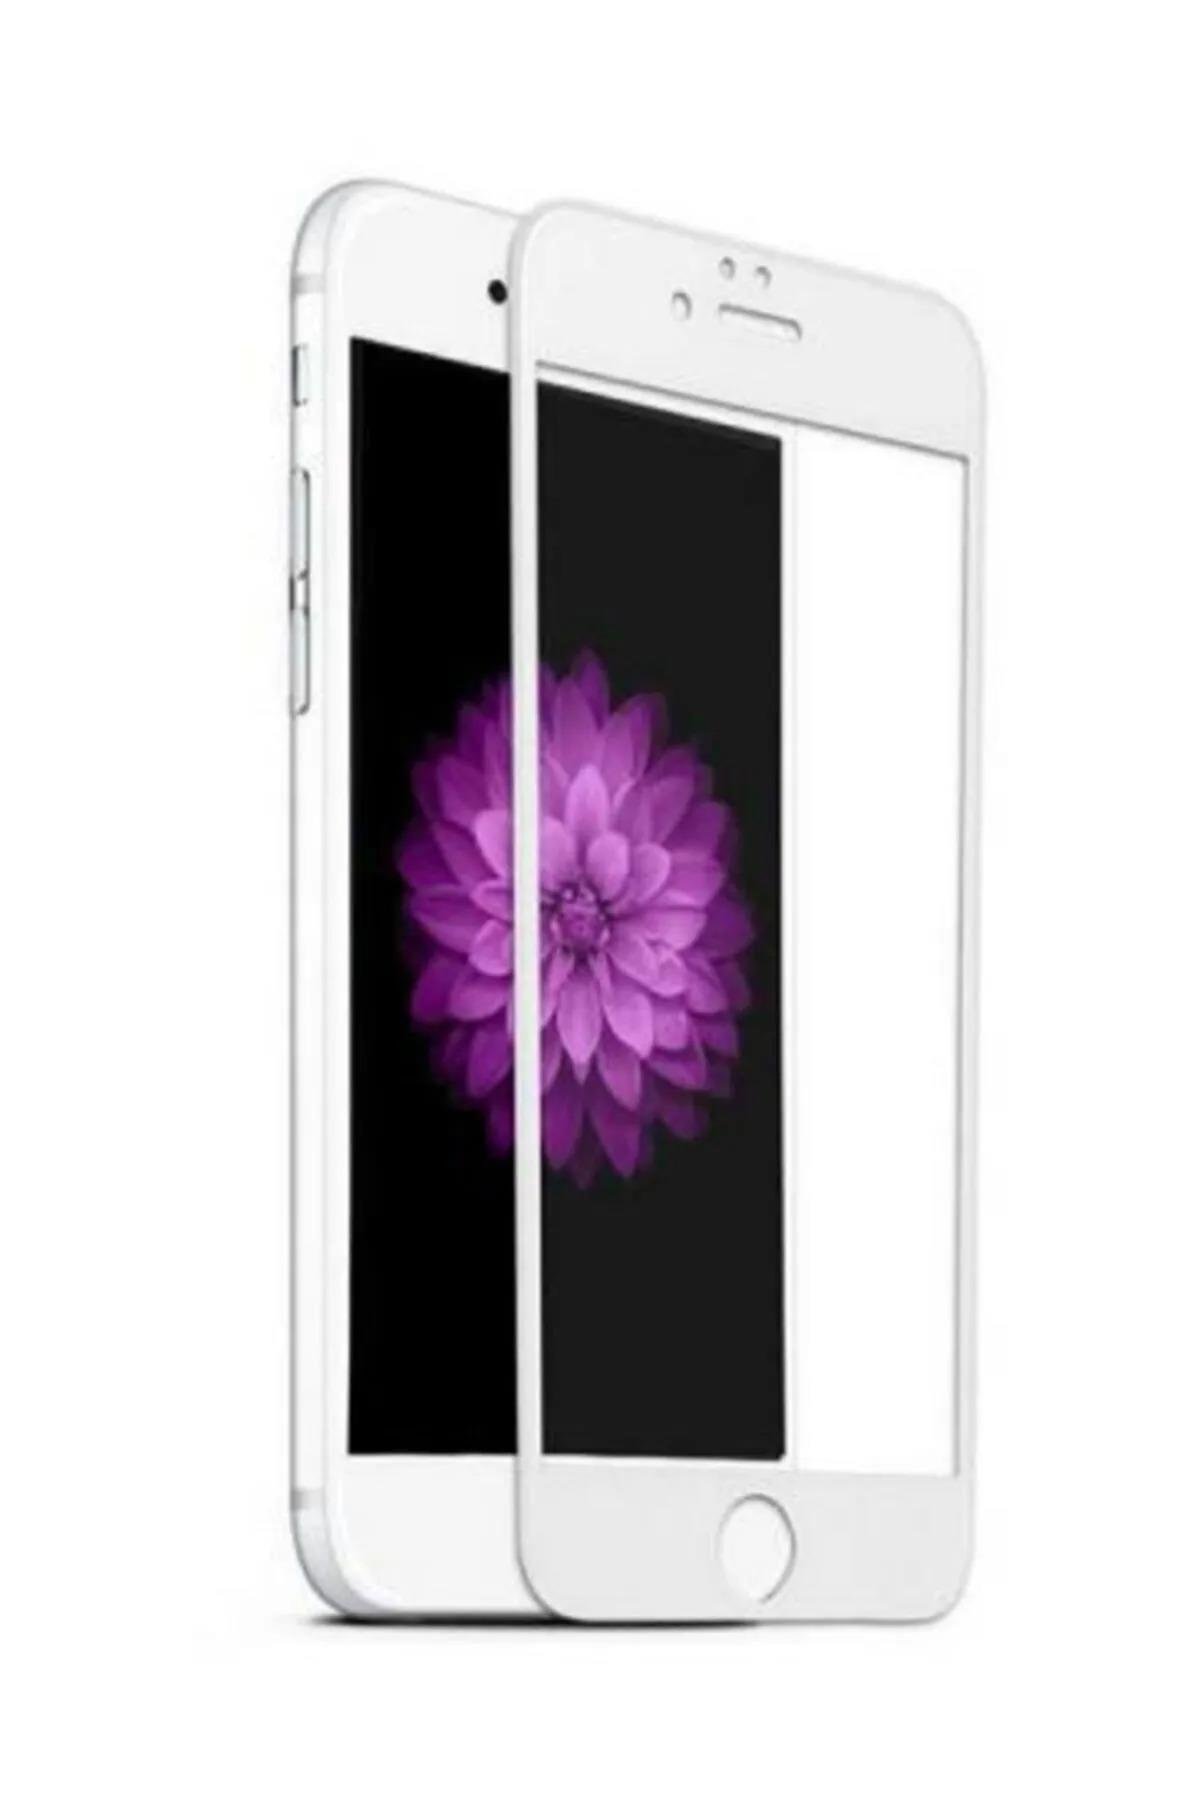 Güvende Olun: iPhone 8/7 plus Uyumlu 5D Ekran Koruyucular Rona'da"